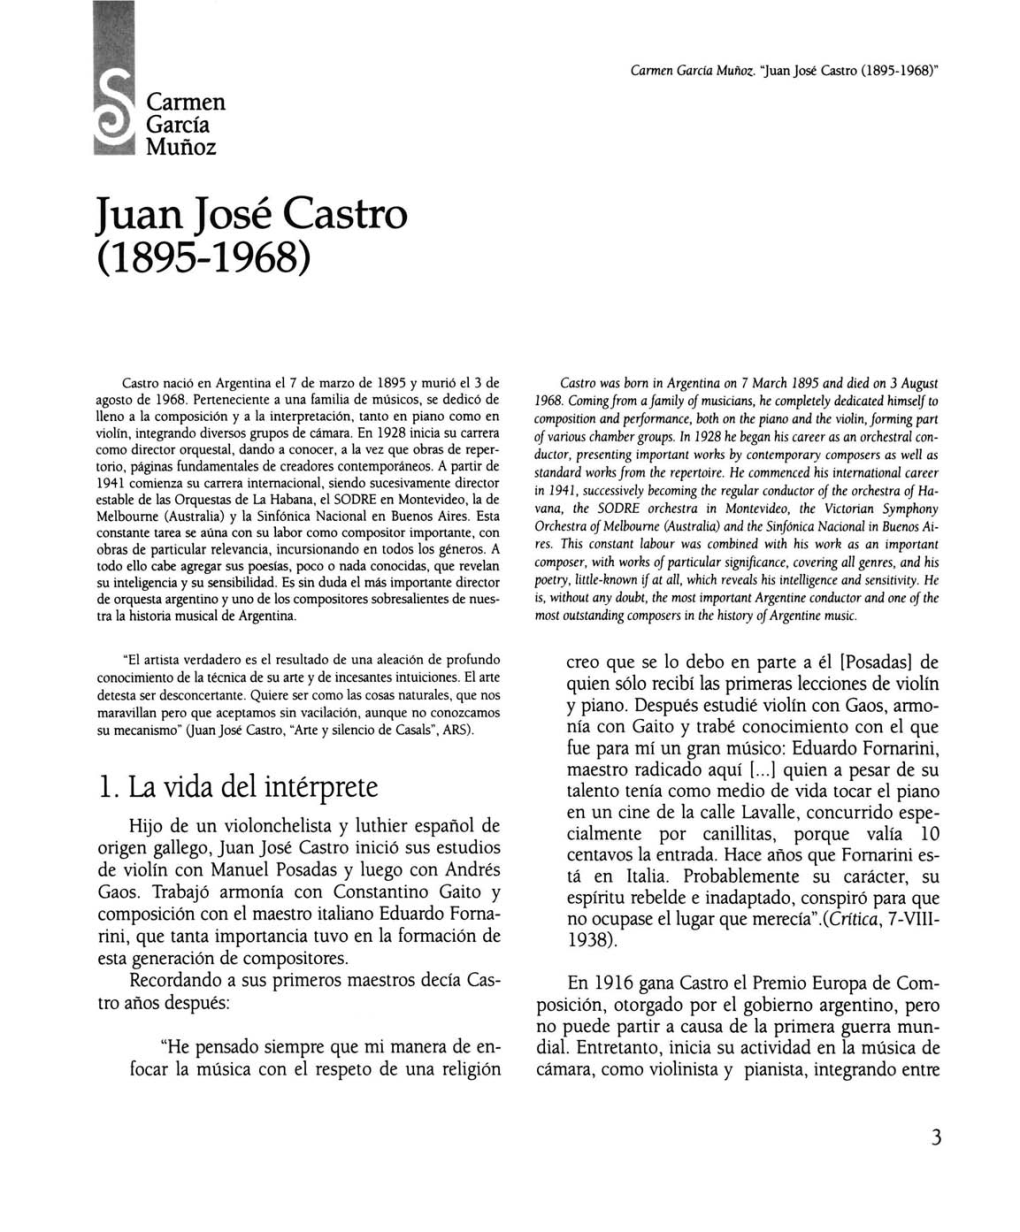 Juan José Castro (1895-1968)"